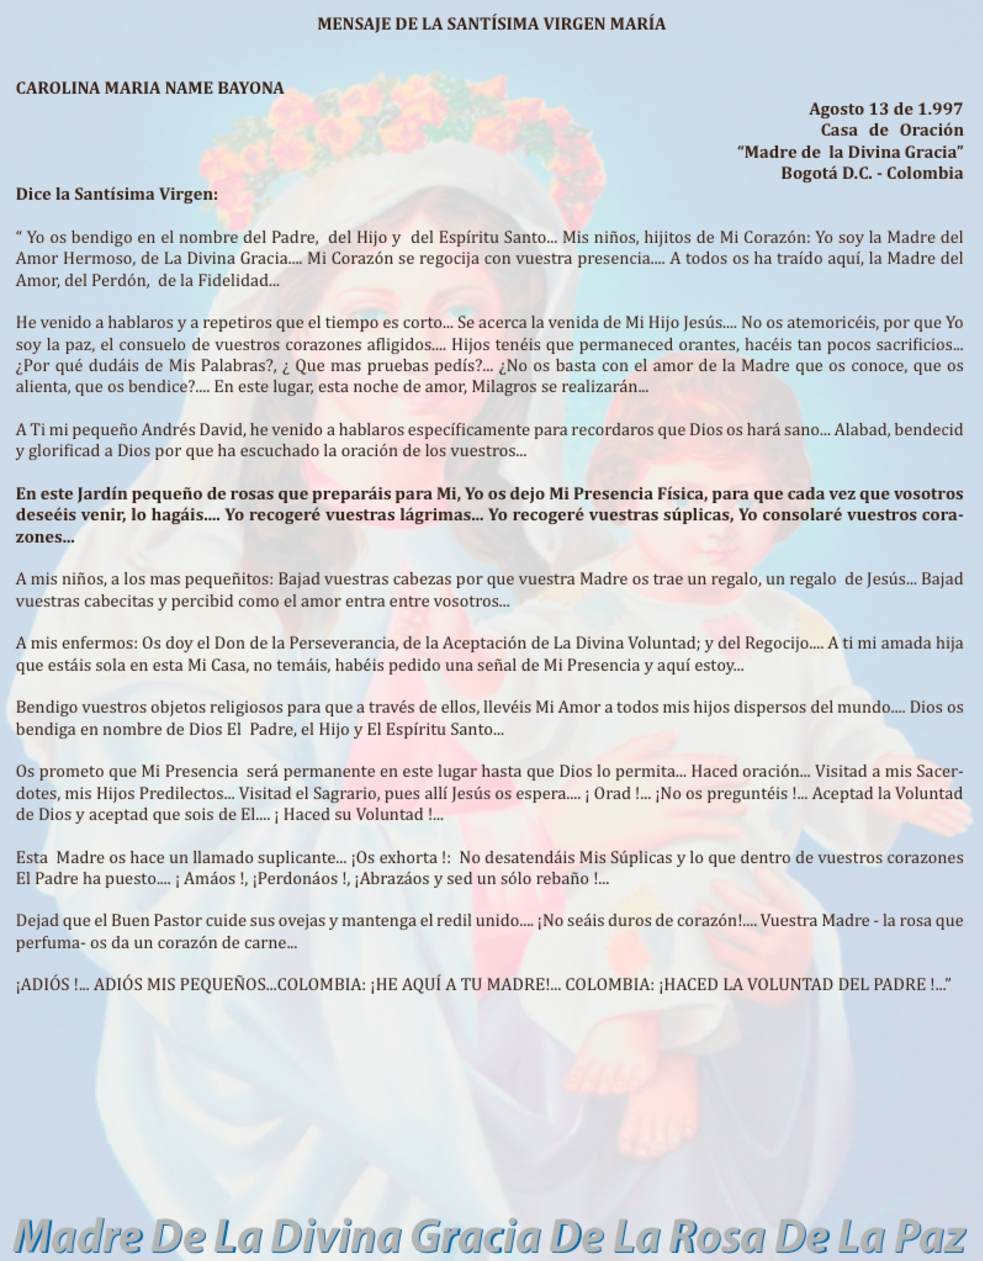 AGOSTO 13 de 1997 Bogotá Colombia - mensaje de la virgen